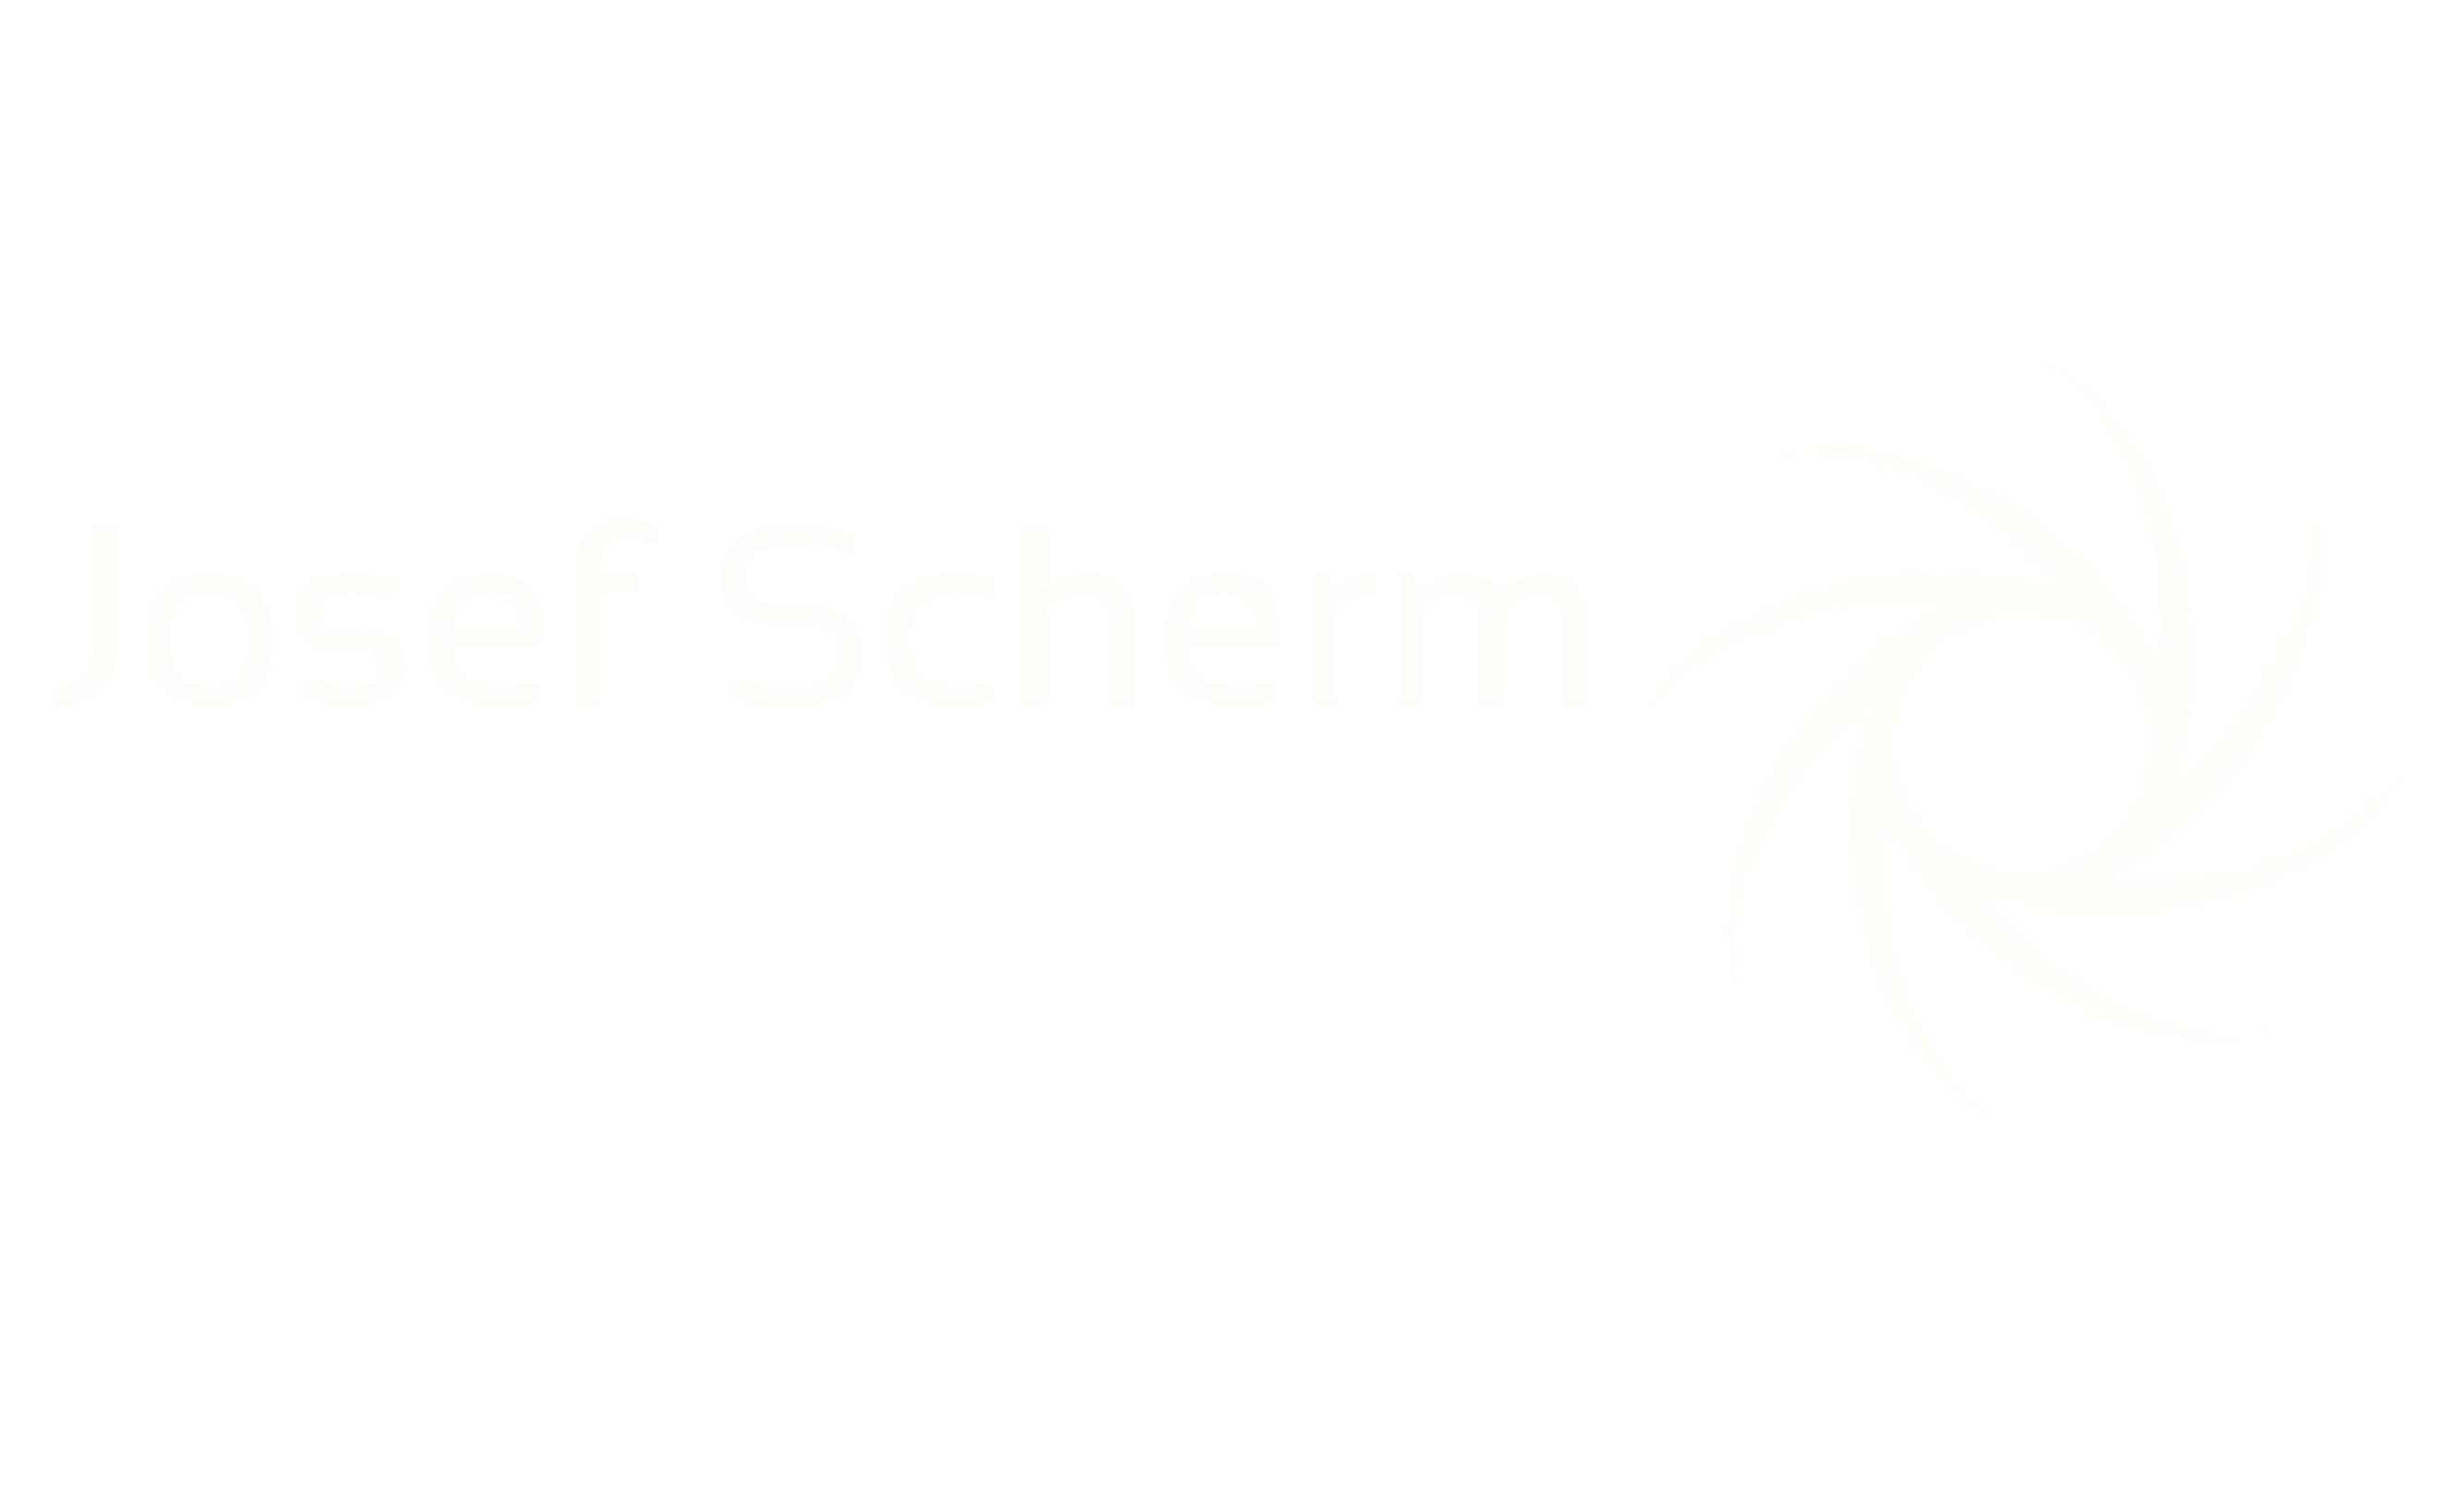 Josef Scherm Photografie